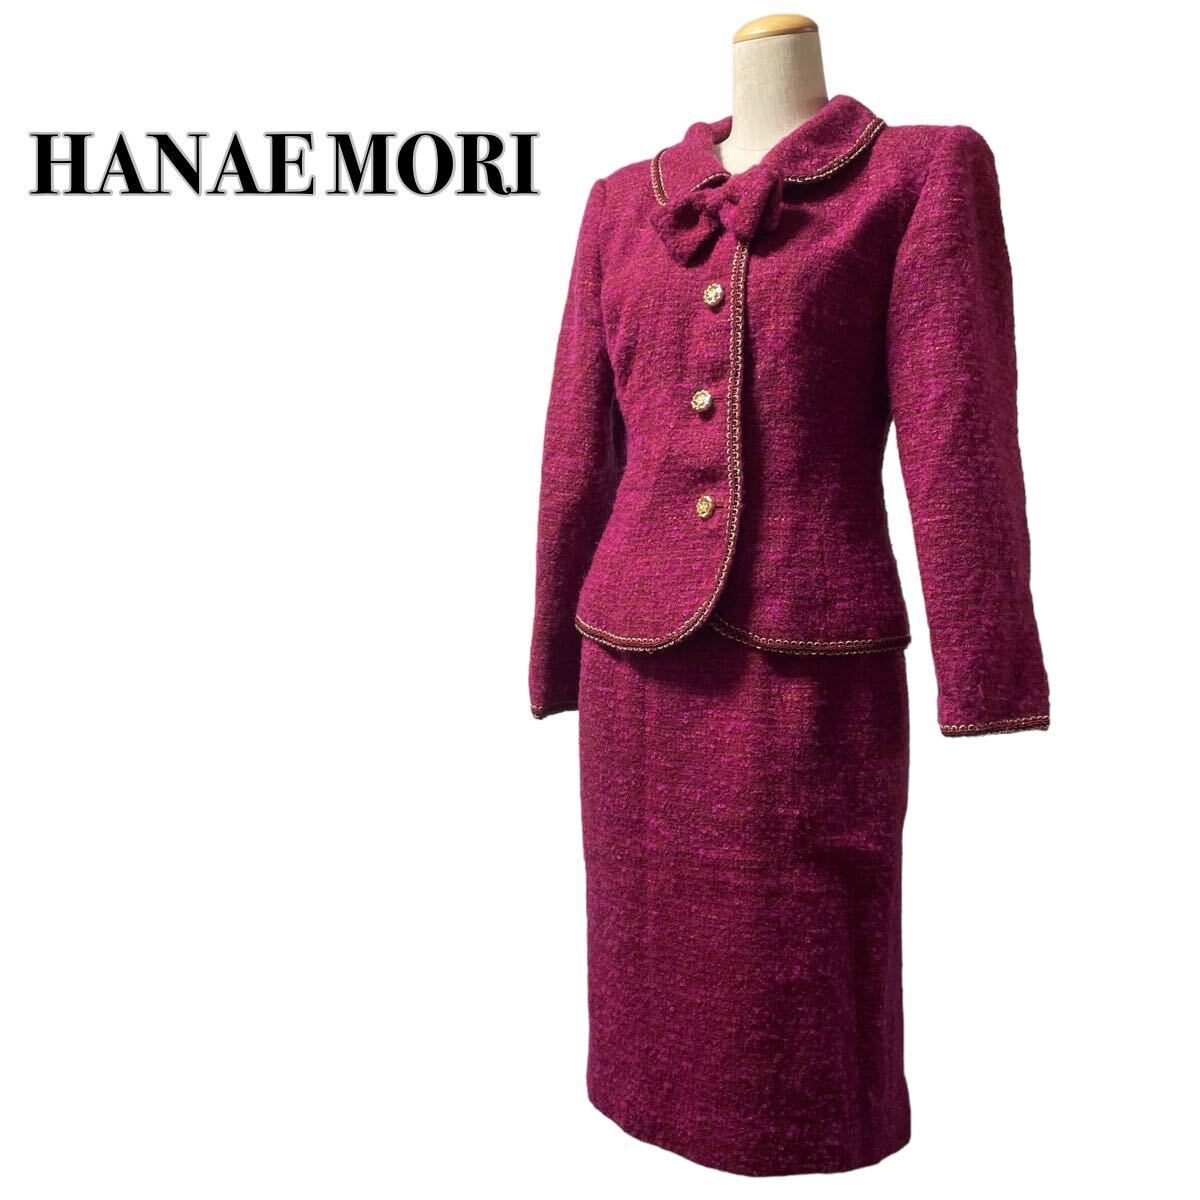 HANAE MORI is na emo li silk setup suit tweed gold button pink lame entering M corresponding 